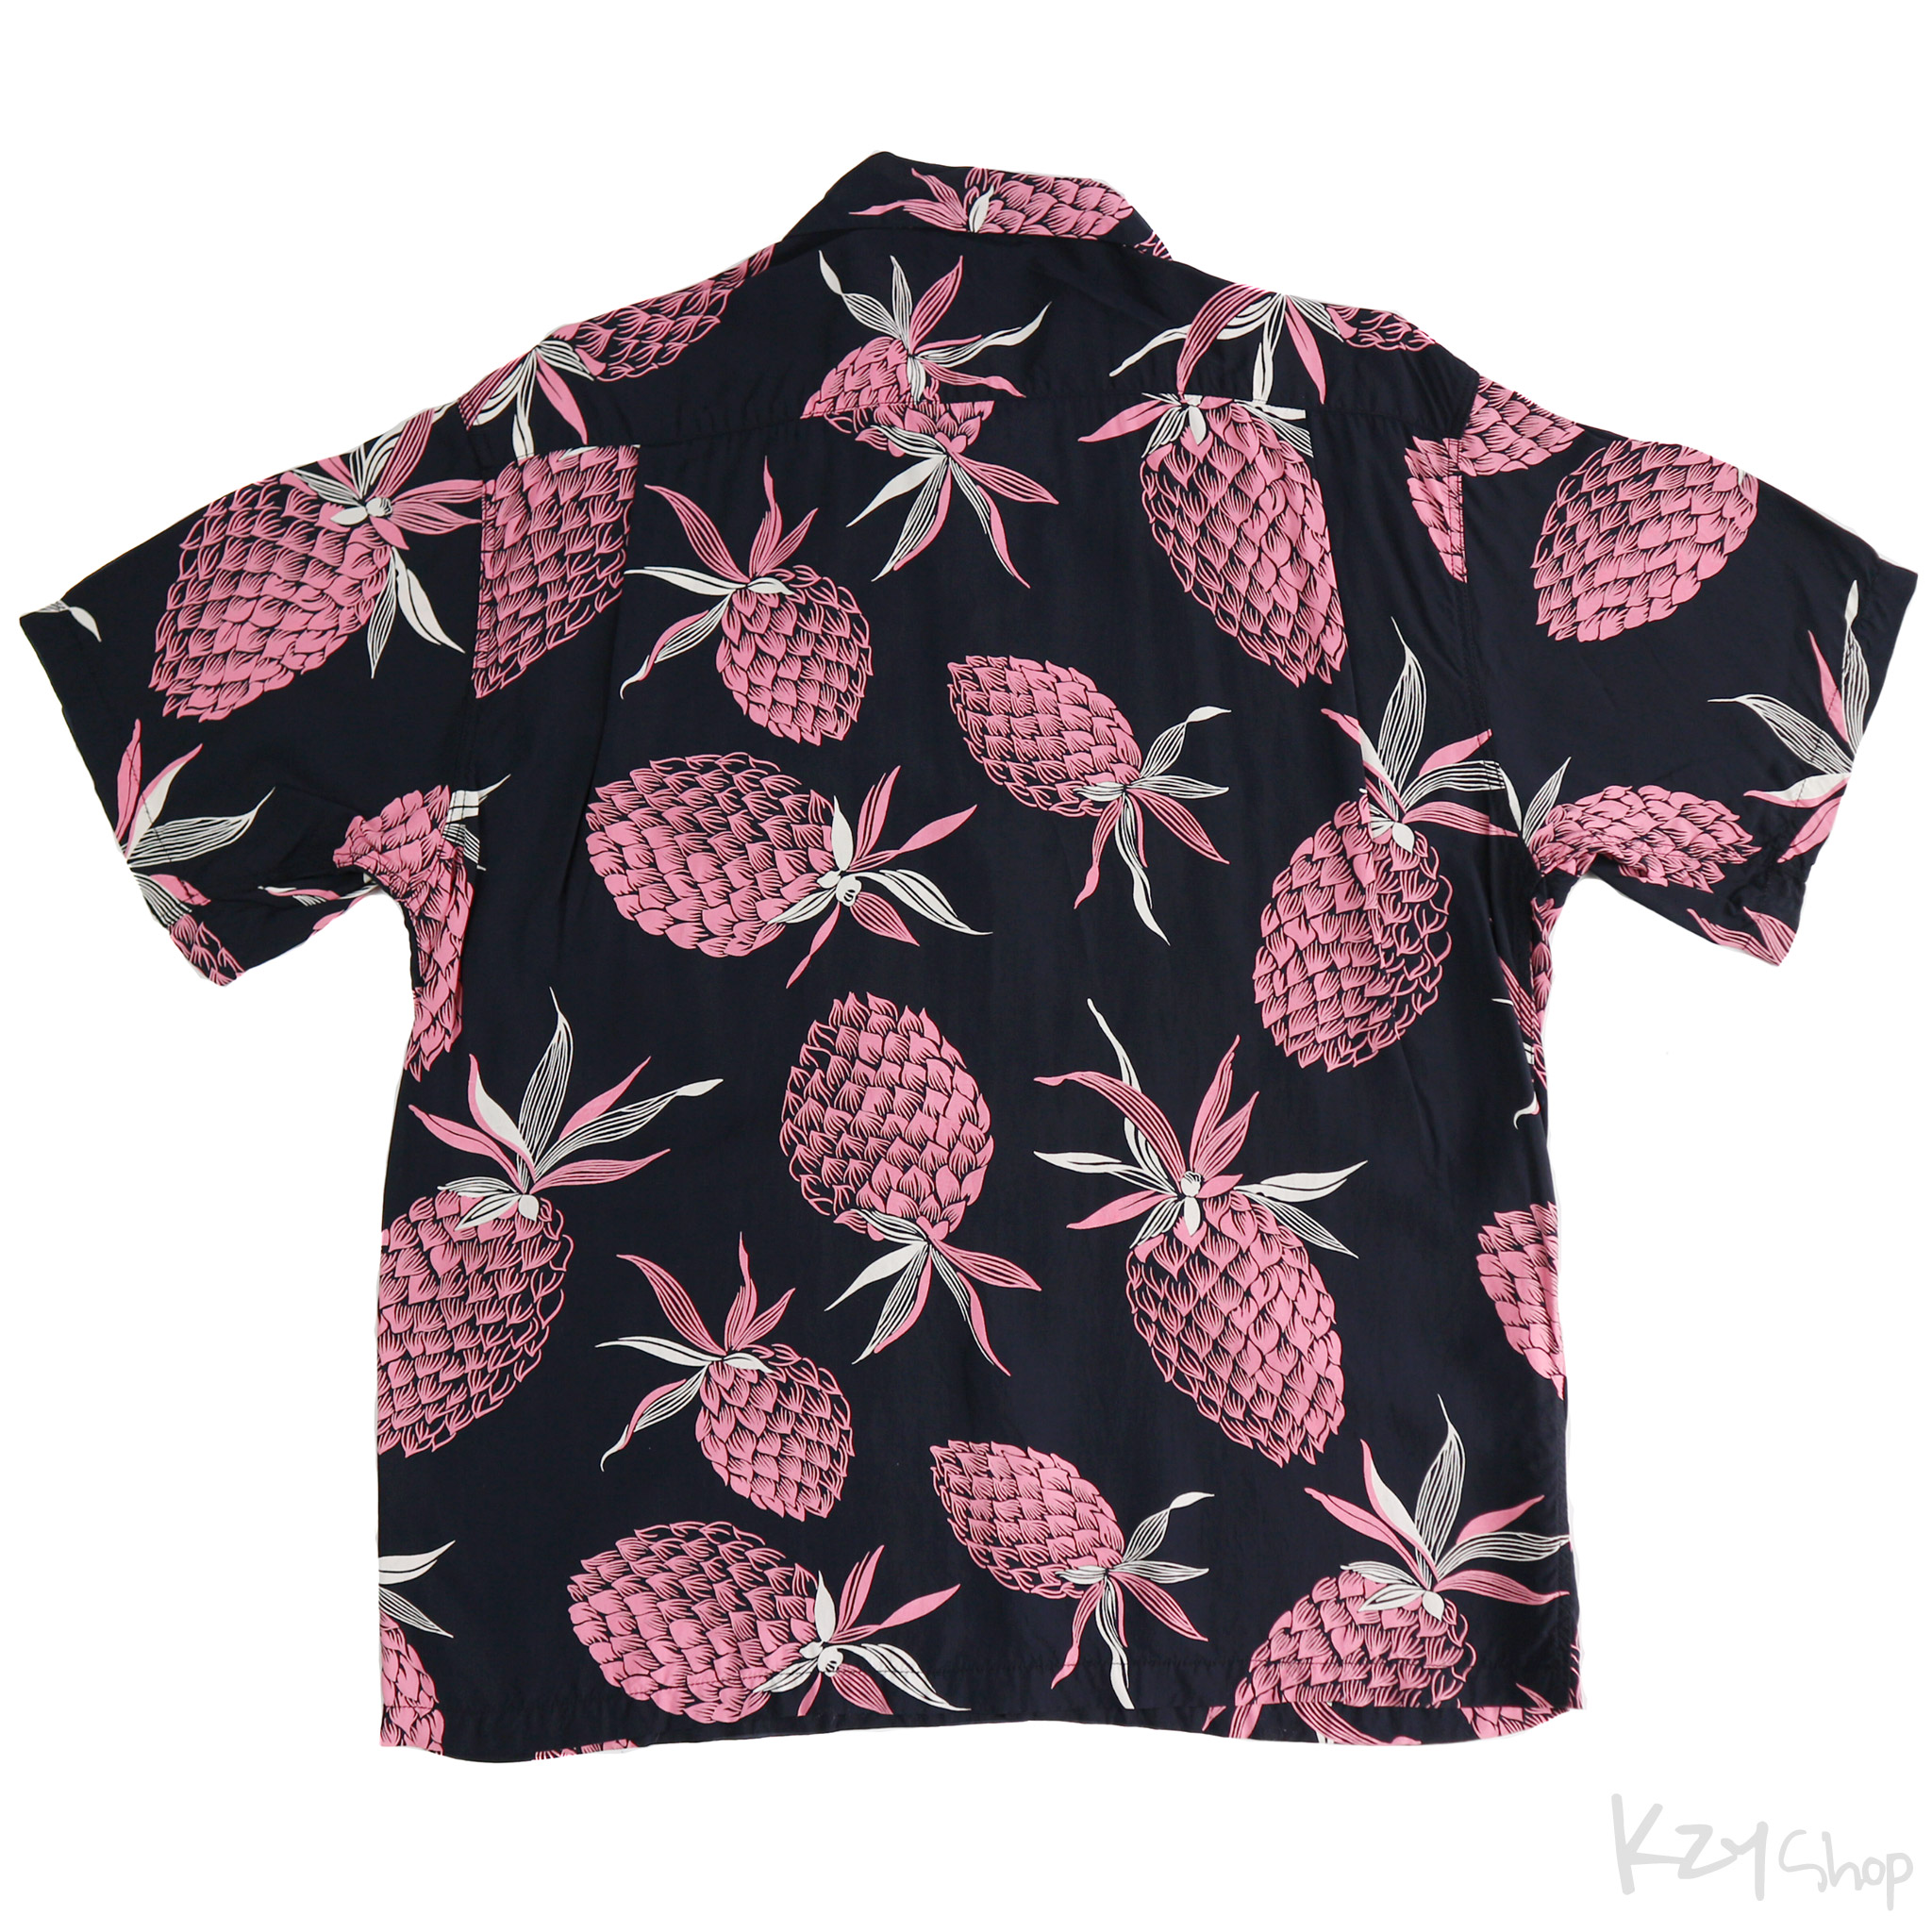 เสื้อฮาวาย SUN SURF - LANAI PINAPPLE